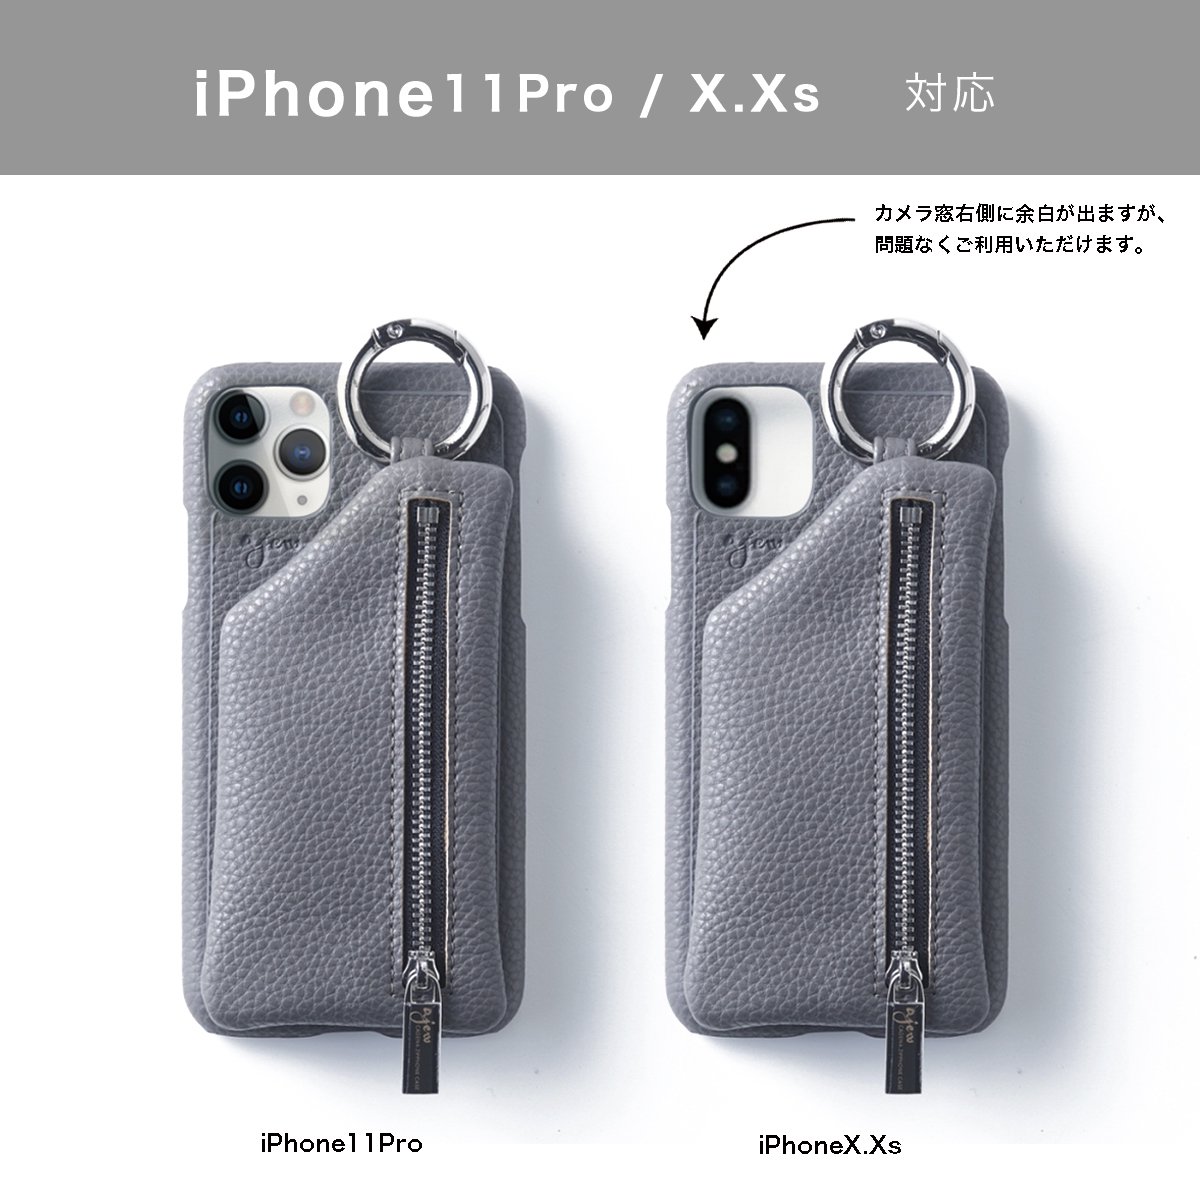 【ひも無し】 iPhoneX.Xs.11Pro共通対応 / gray (発送はご注文から3営業日以内です) - ajew